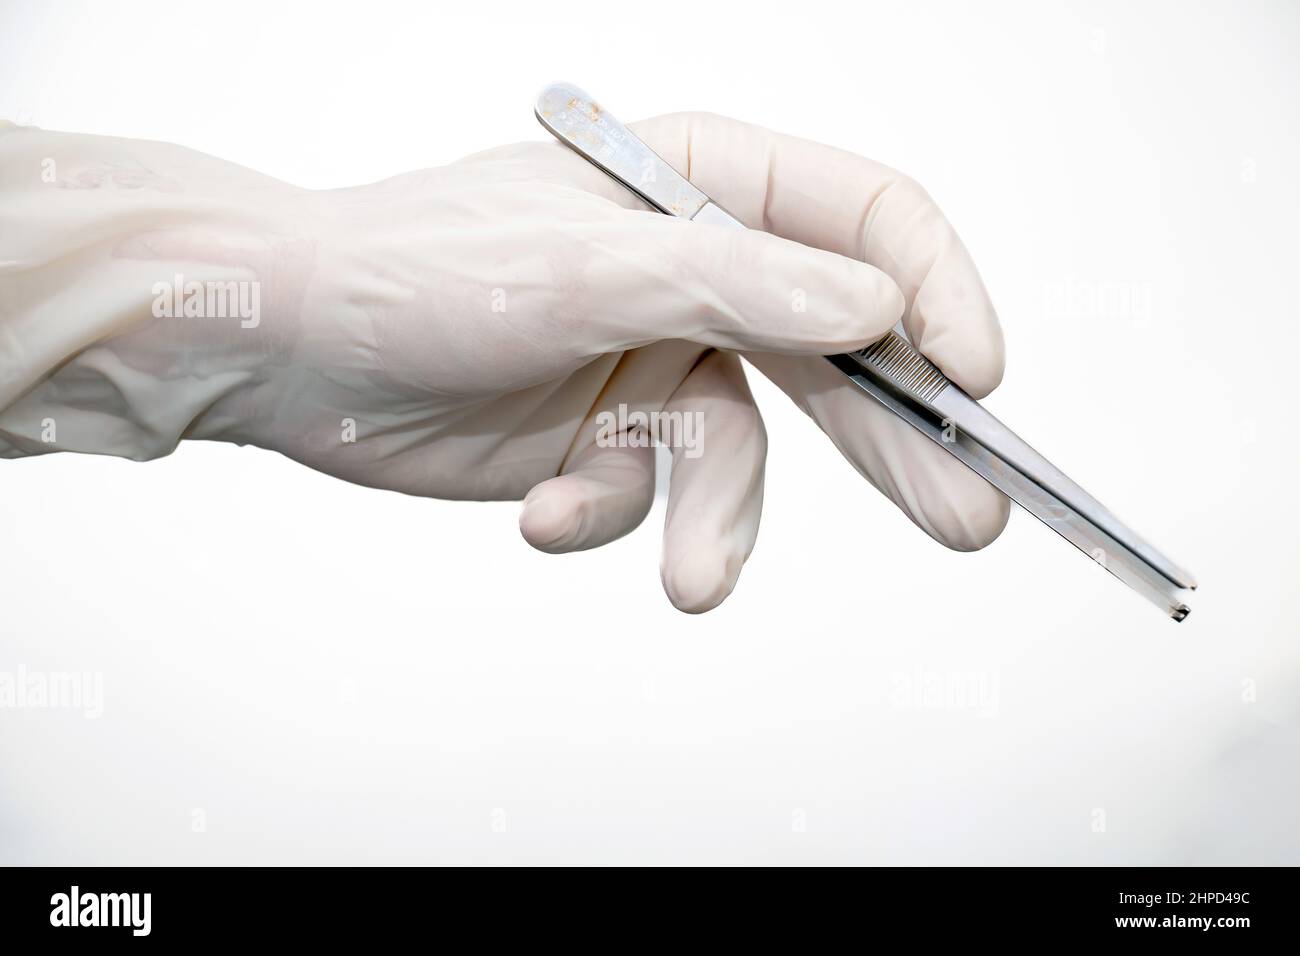 Zeps in Arzthand mit Einweghandschuh auf weißem Hintergrund. Der Arzt hält eine metallische, silberne, stählerne chirurgische Zange. Medizinische Geräte von Stainl Stockfoto